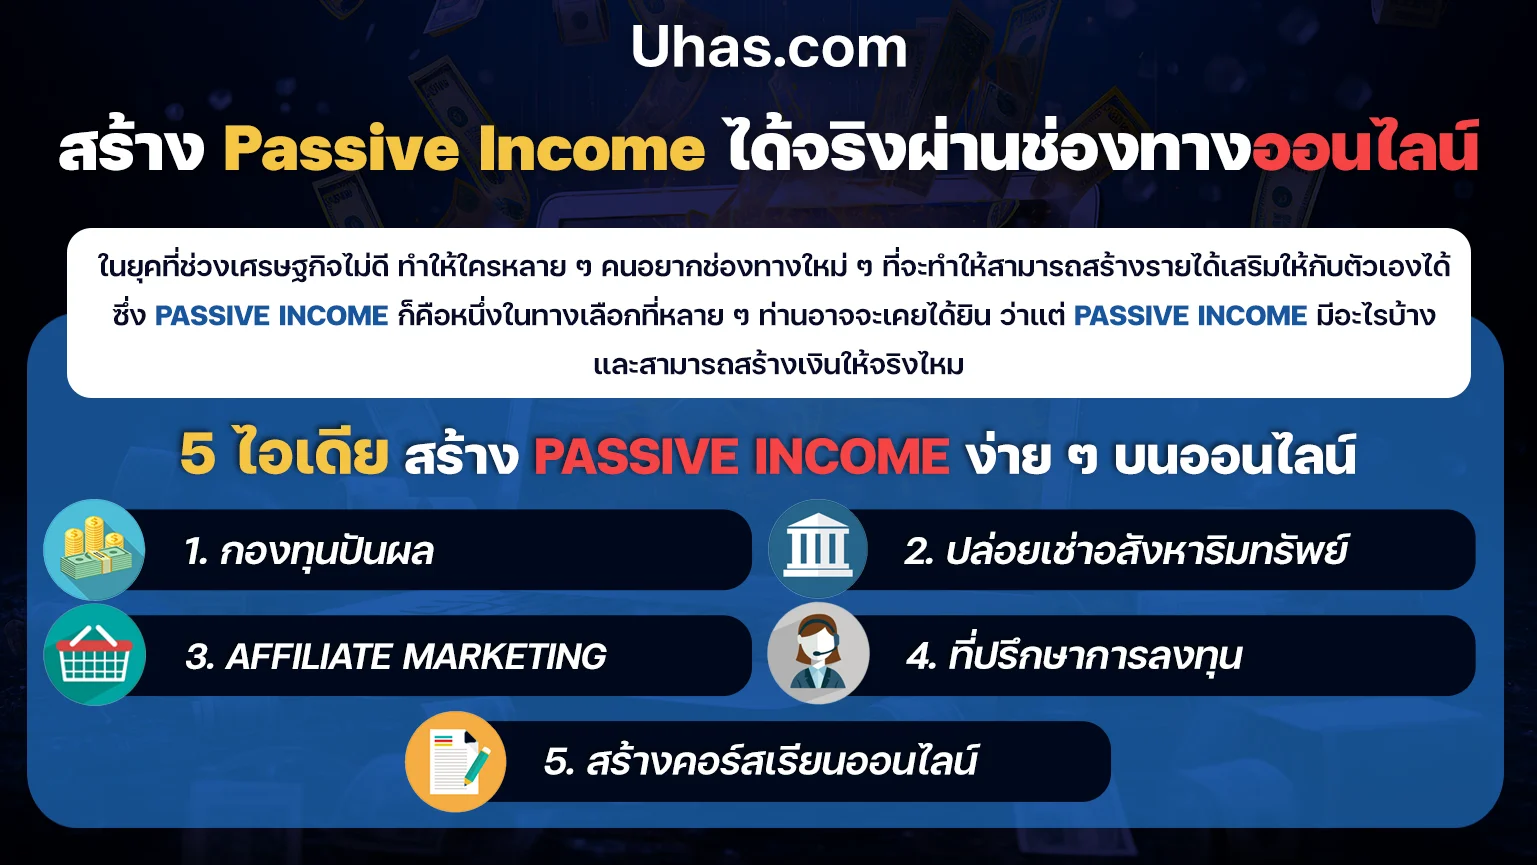 5 ไอเดีย สร้าง Passive Income บนออนไลน์